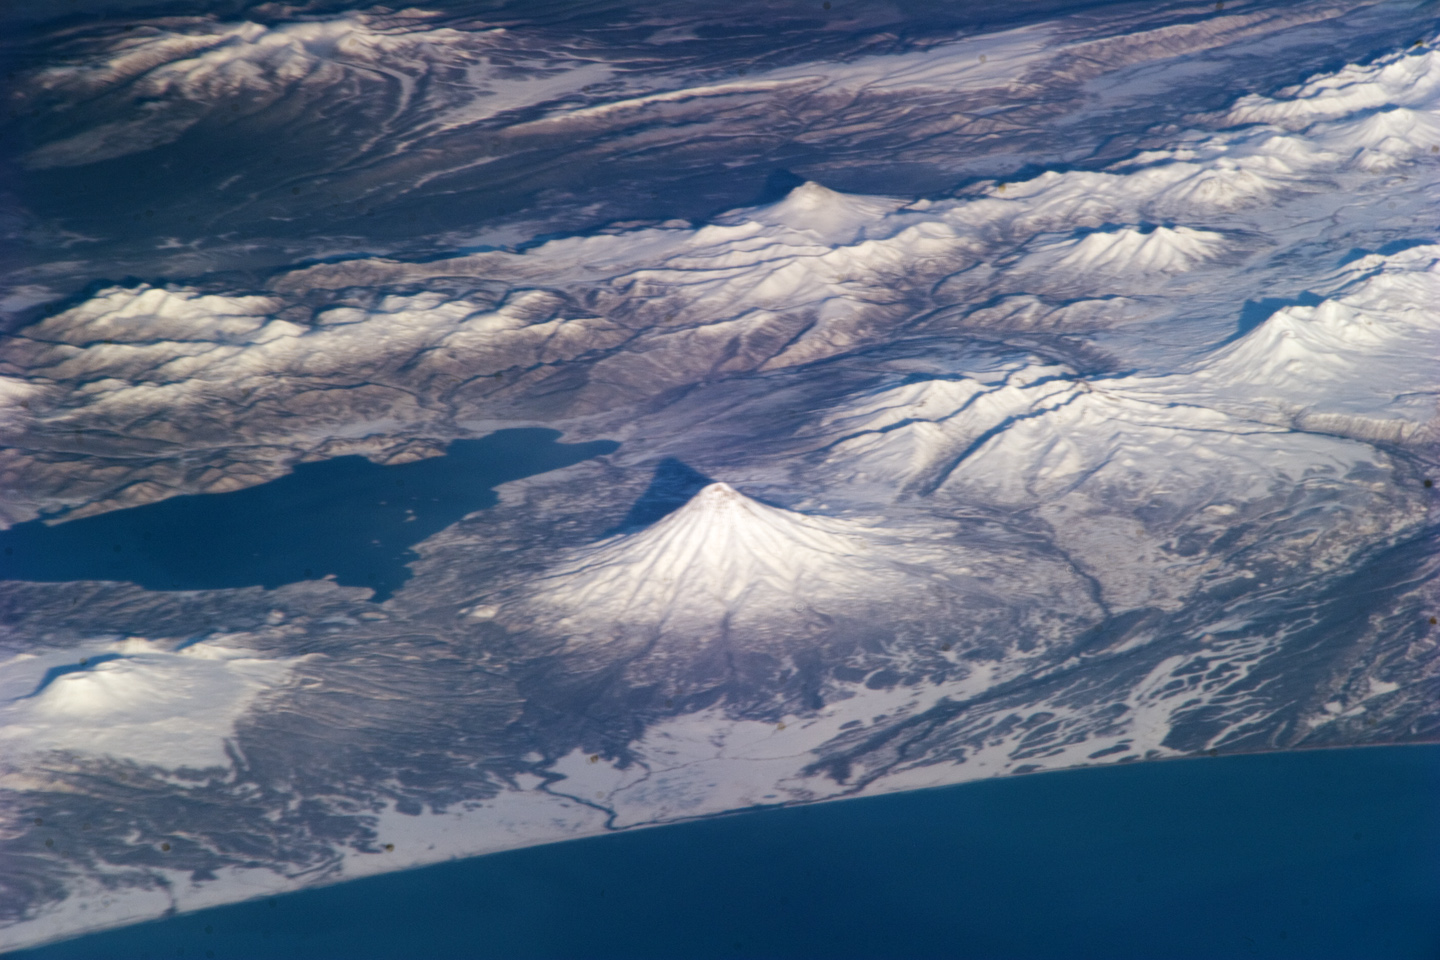 ISS Image of Russia's Kamcharka Peninsula